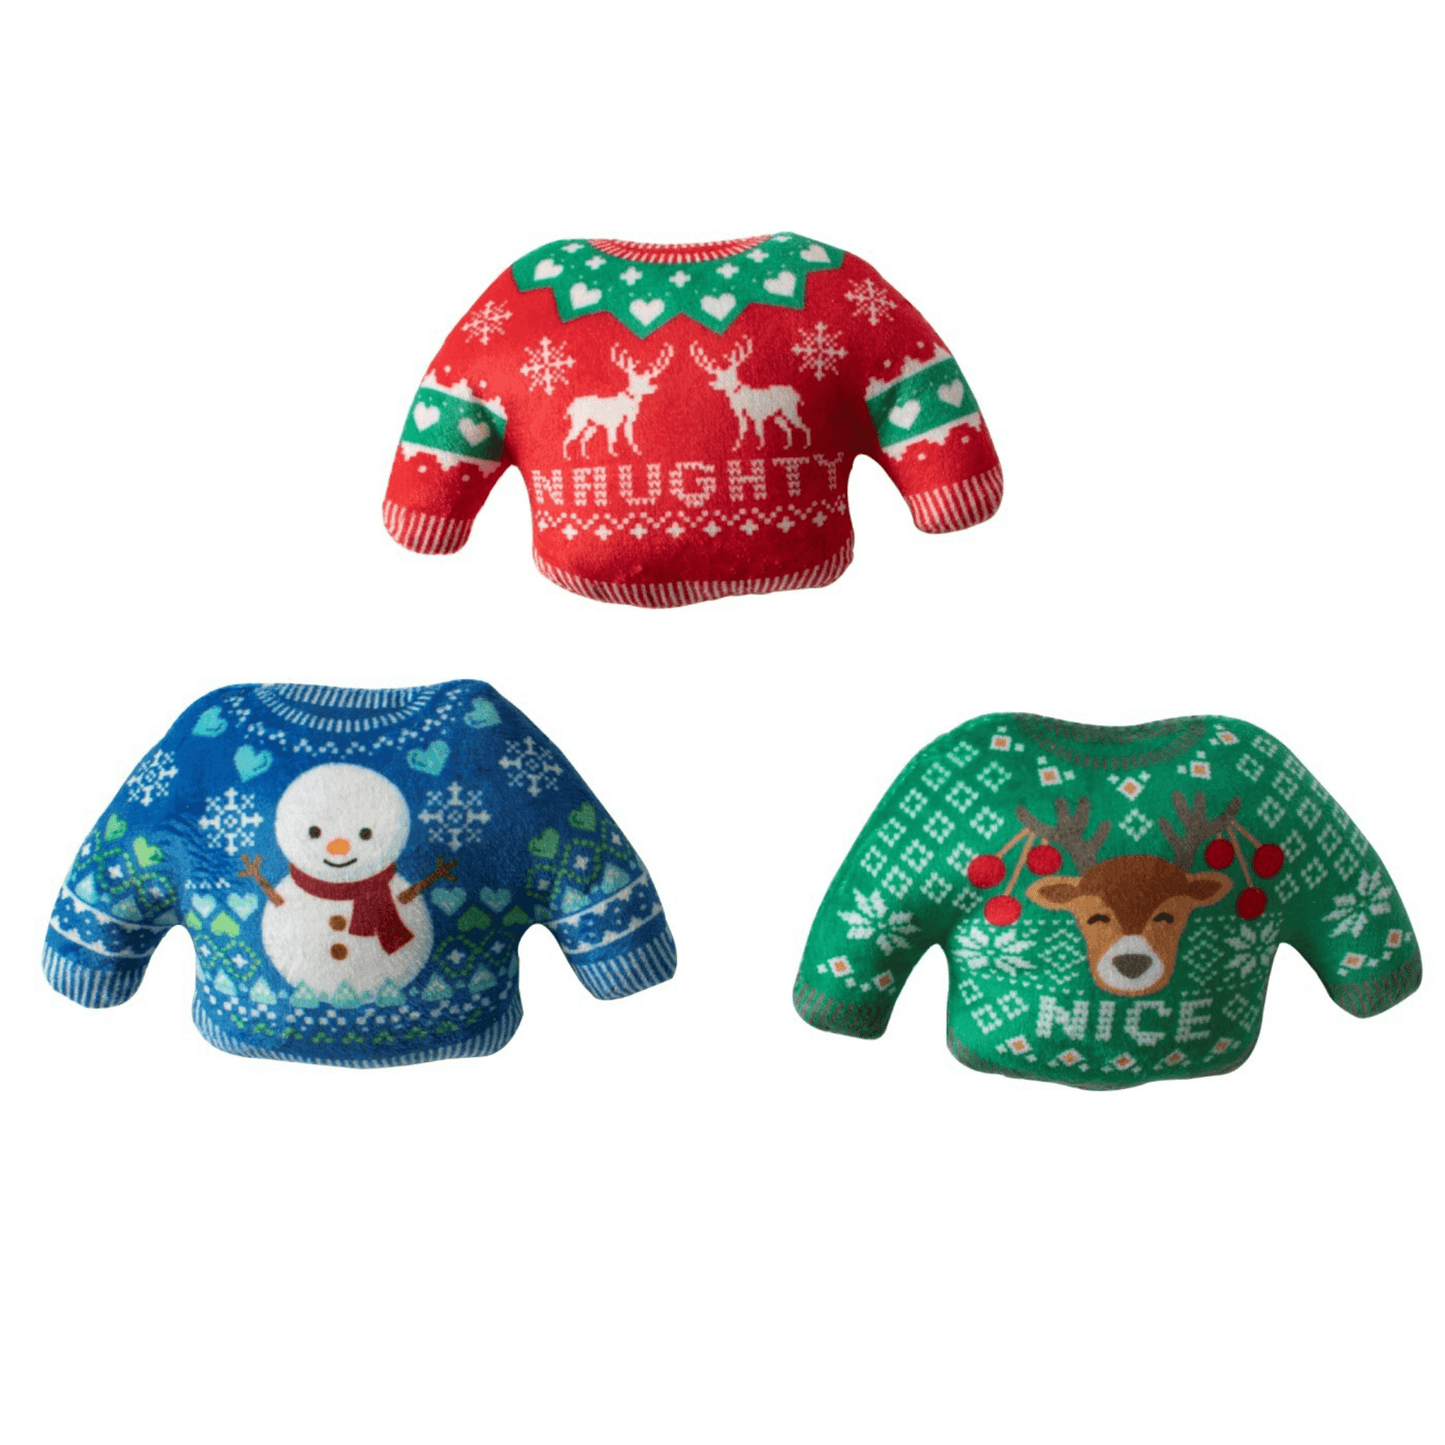 Christmas Sweater plush dog toy set Let's Pawty